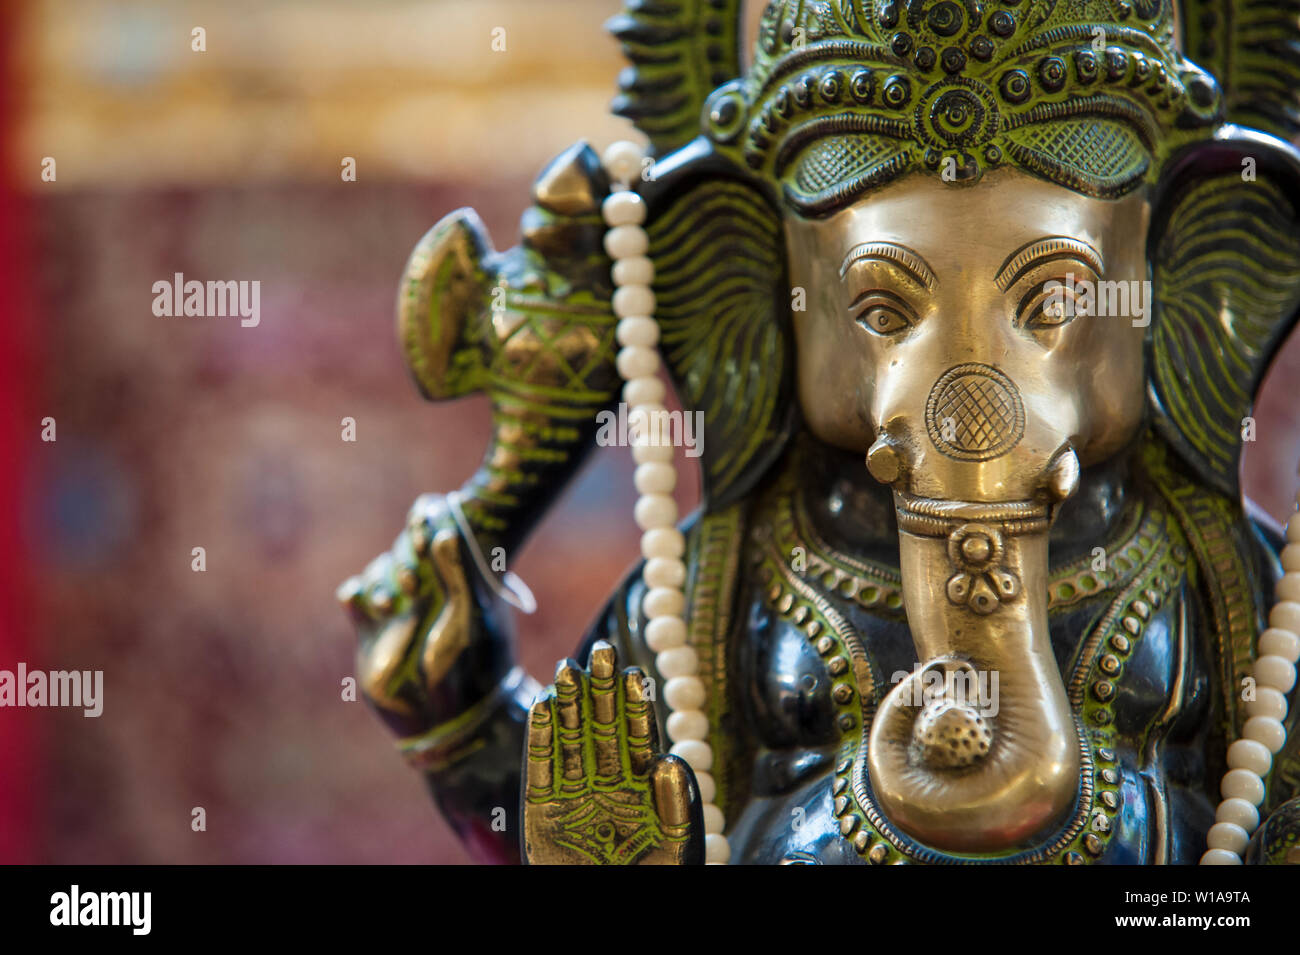 Hindu Tempel mit einer Statue von Ganesh auf dem Altar Stockfoto